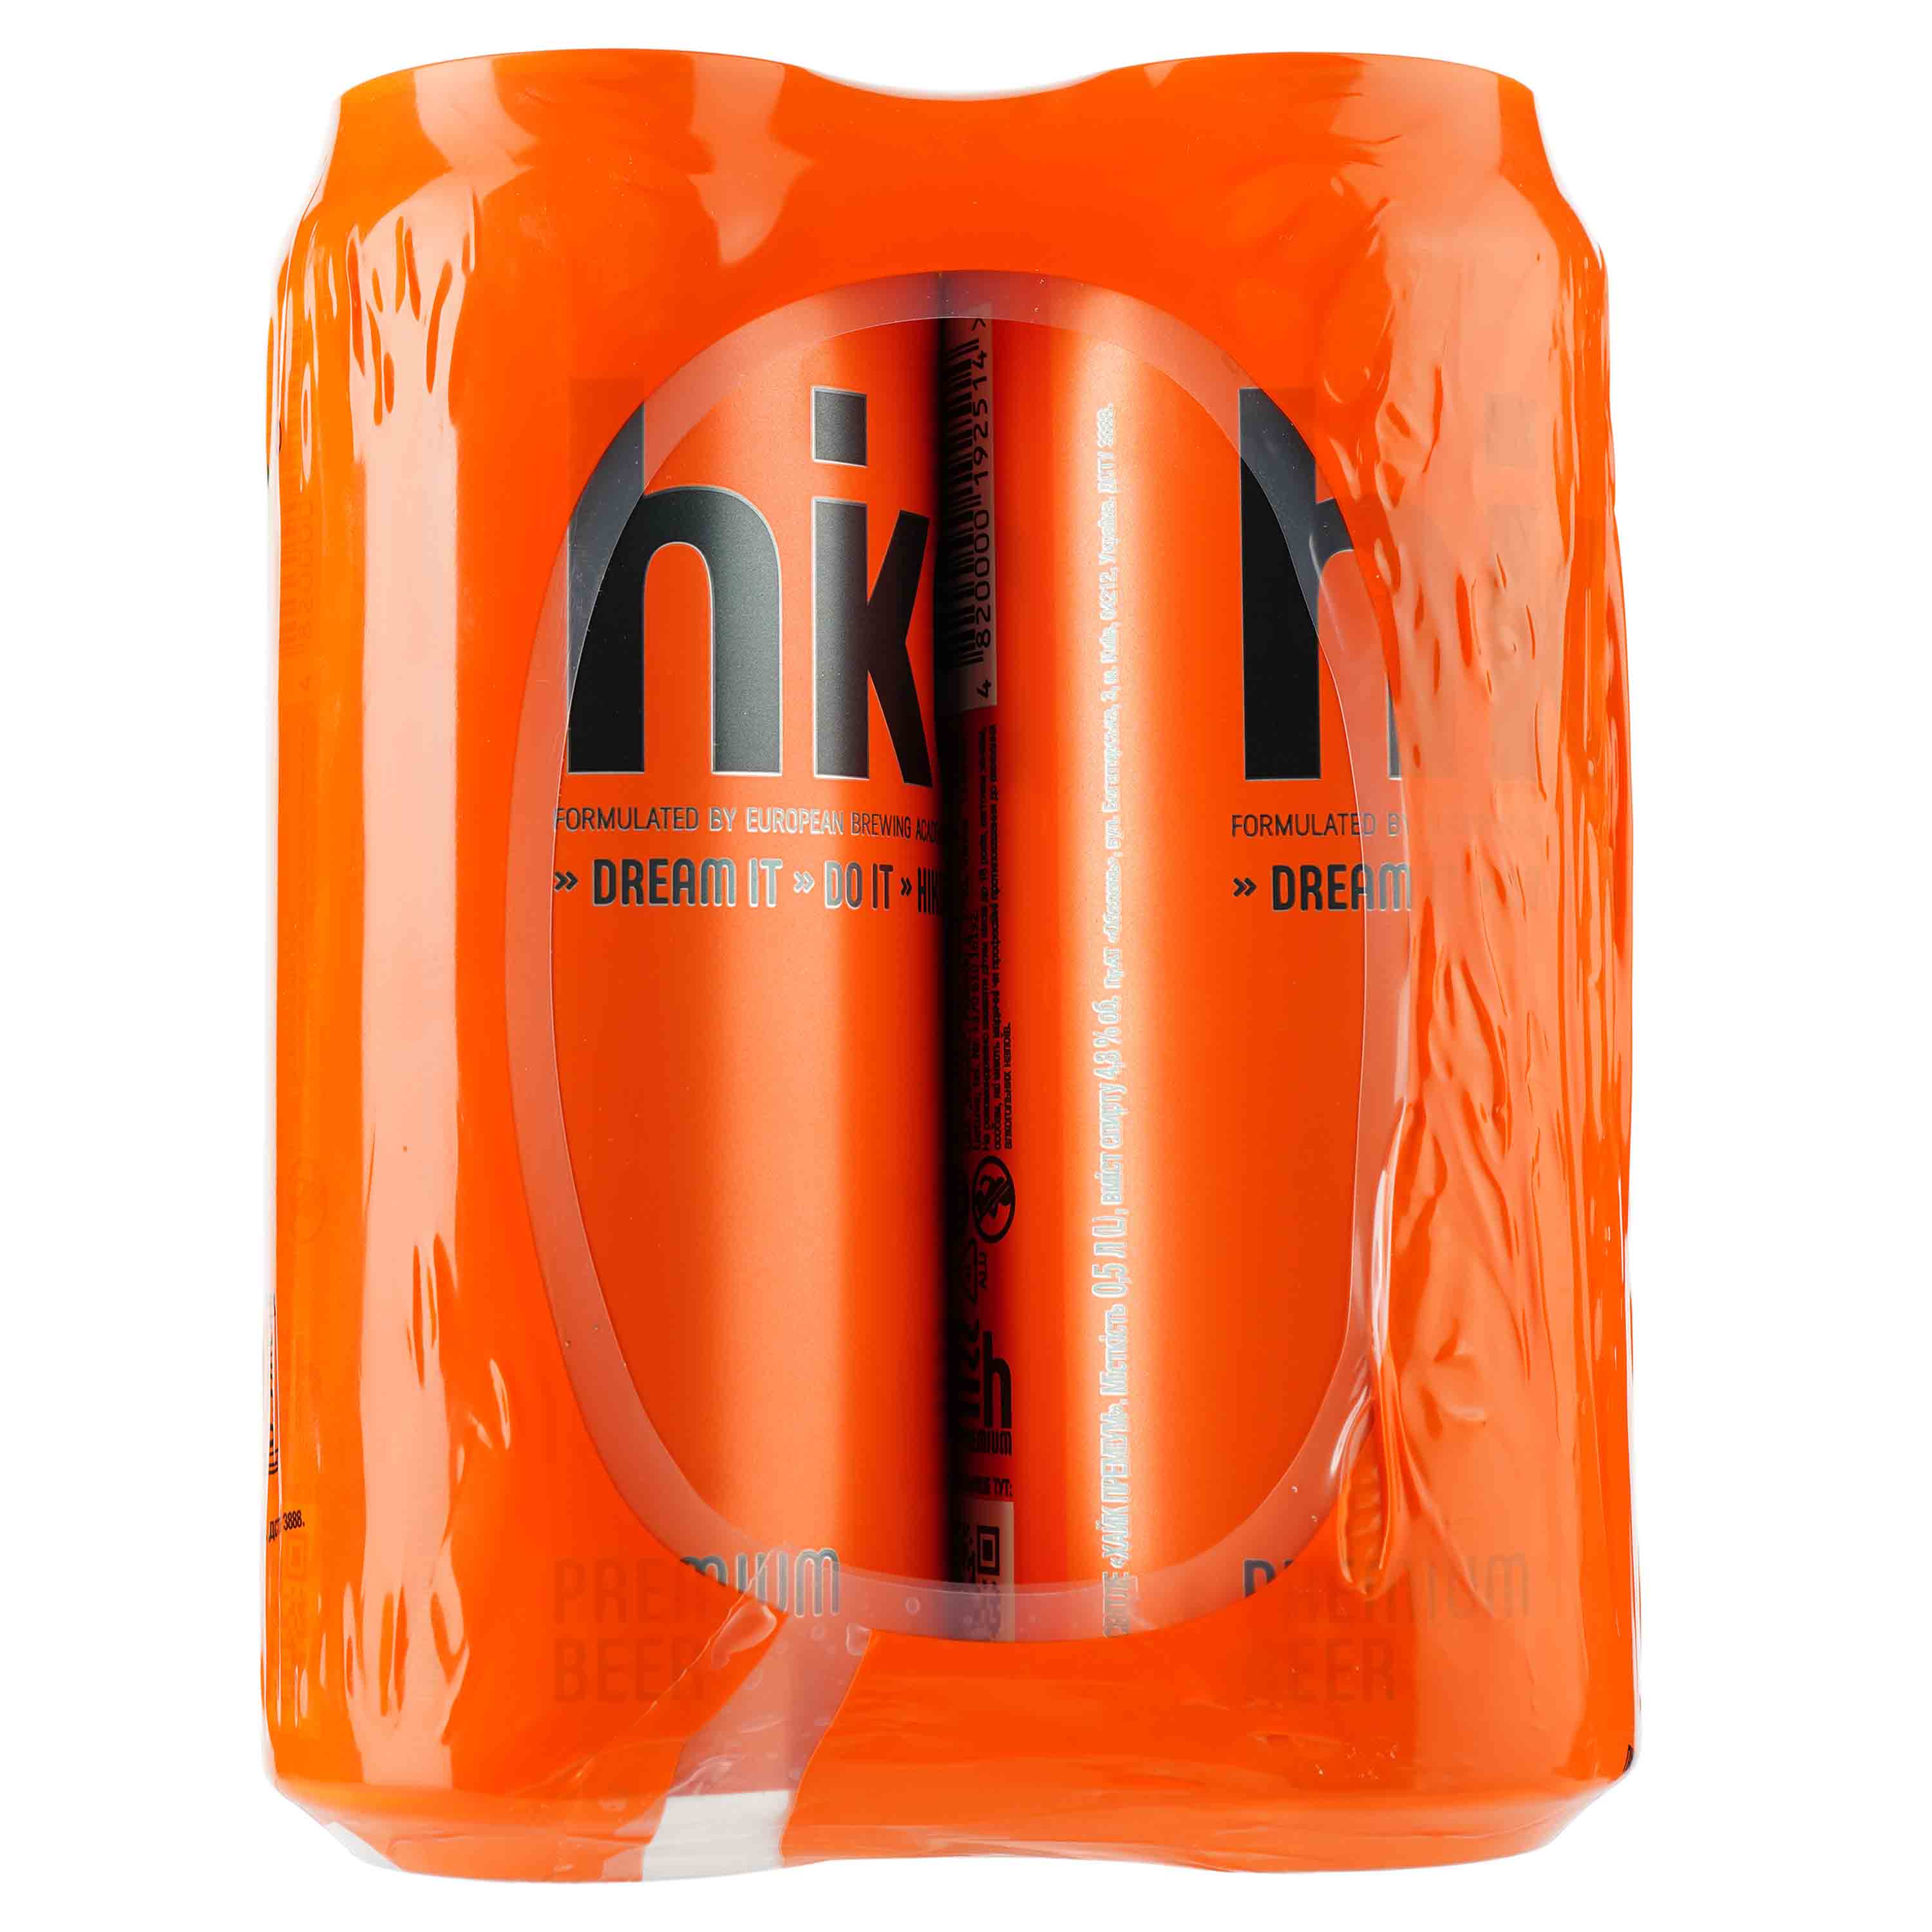 Пиво Hike Premium, светлое, 4,8%, ж/б, 2 л (4 шт. по 0,5 л) (840504) - фото 2